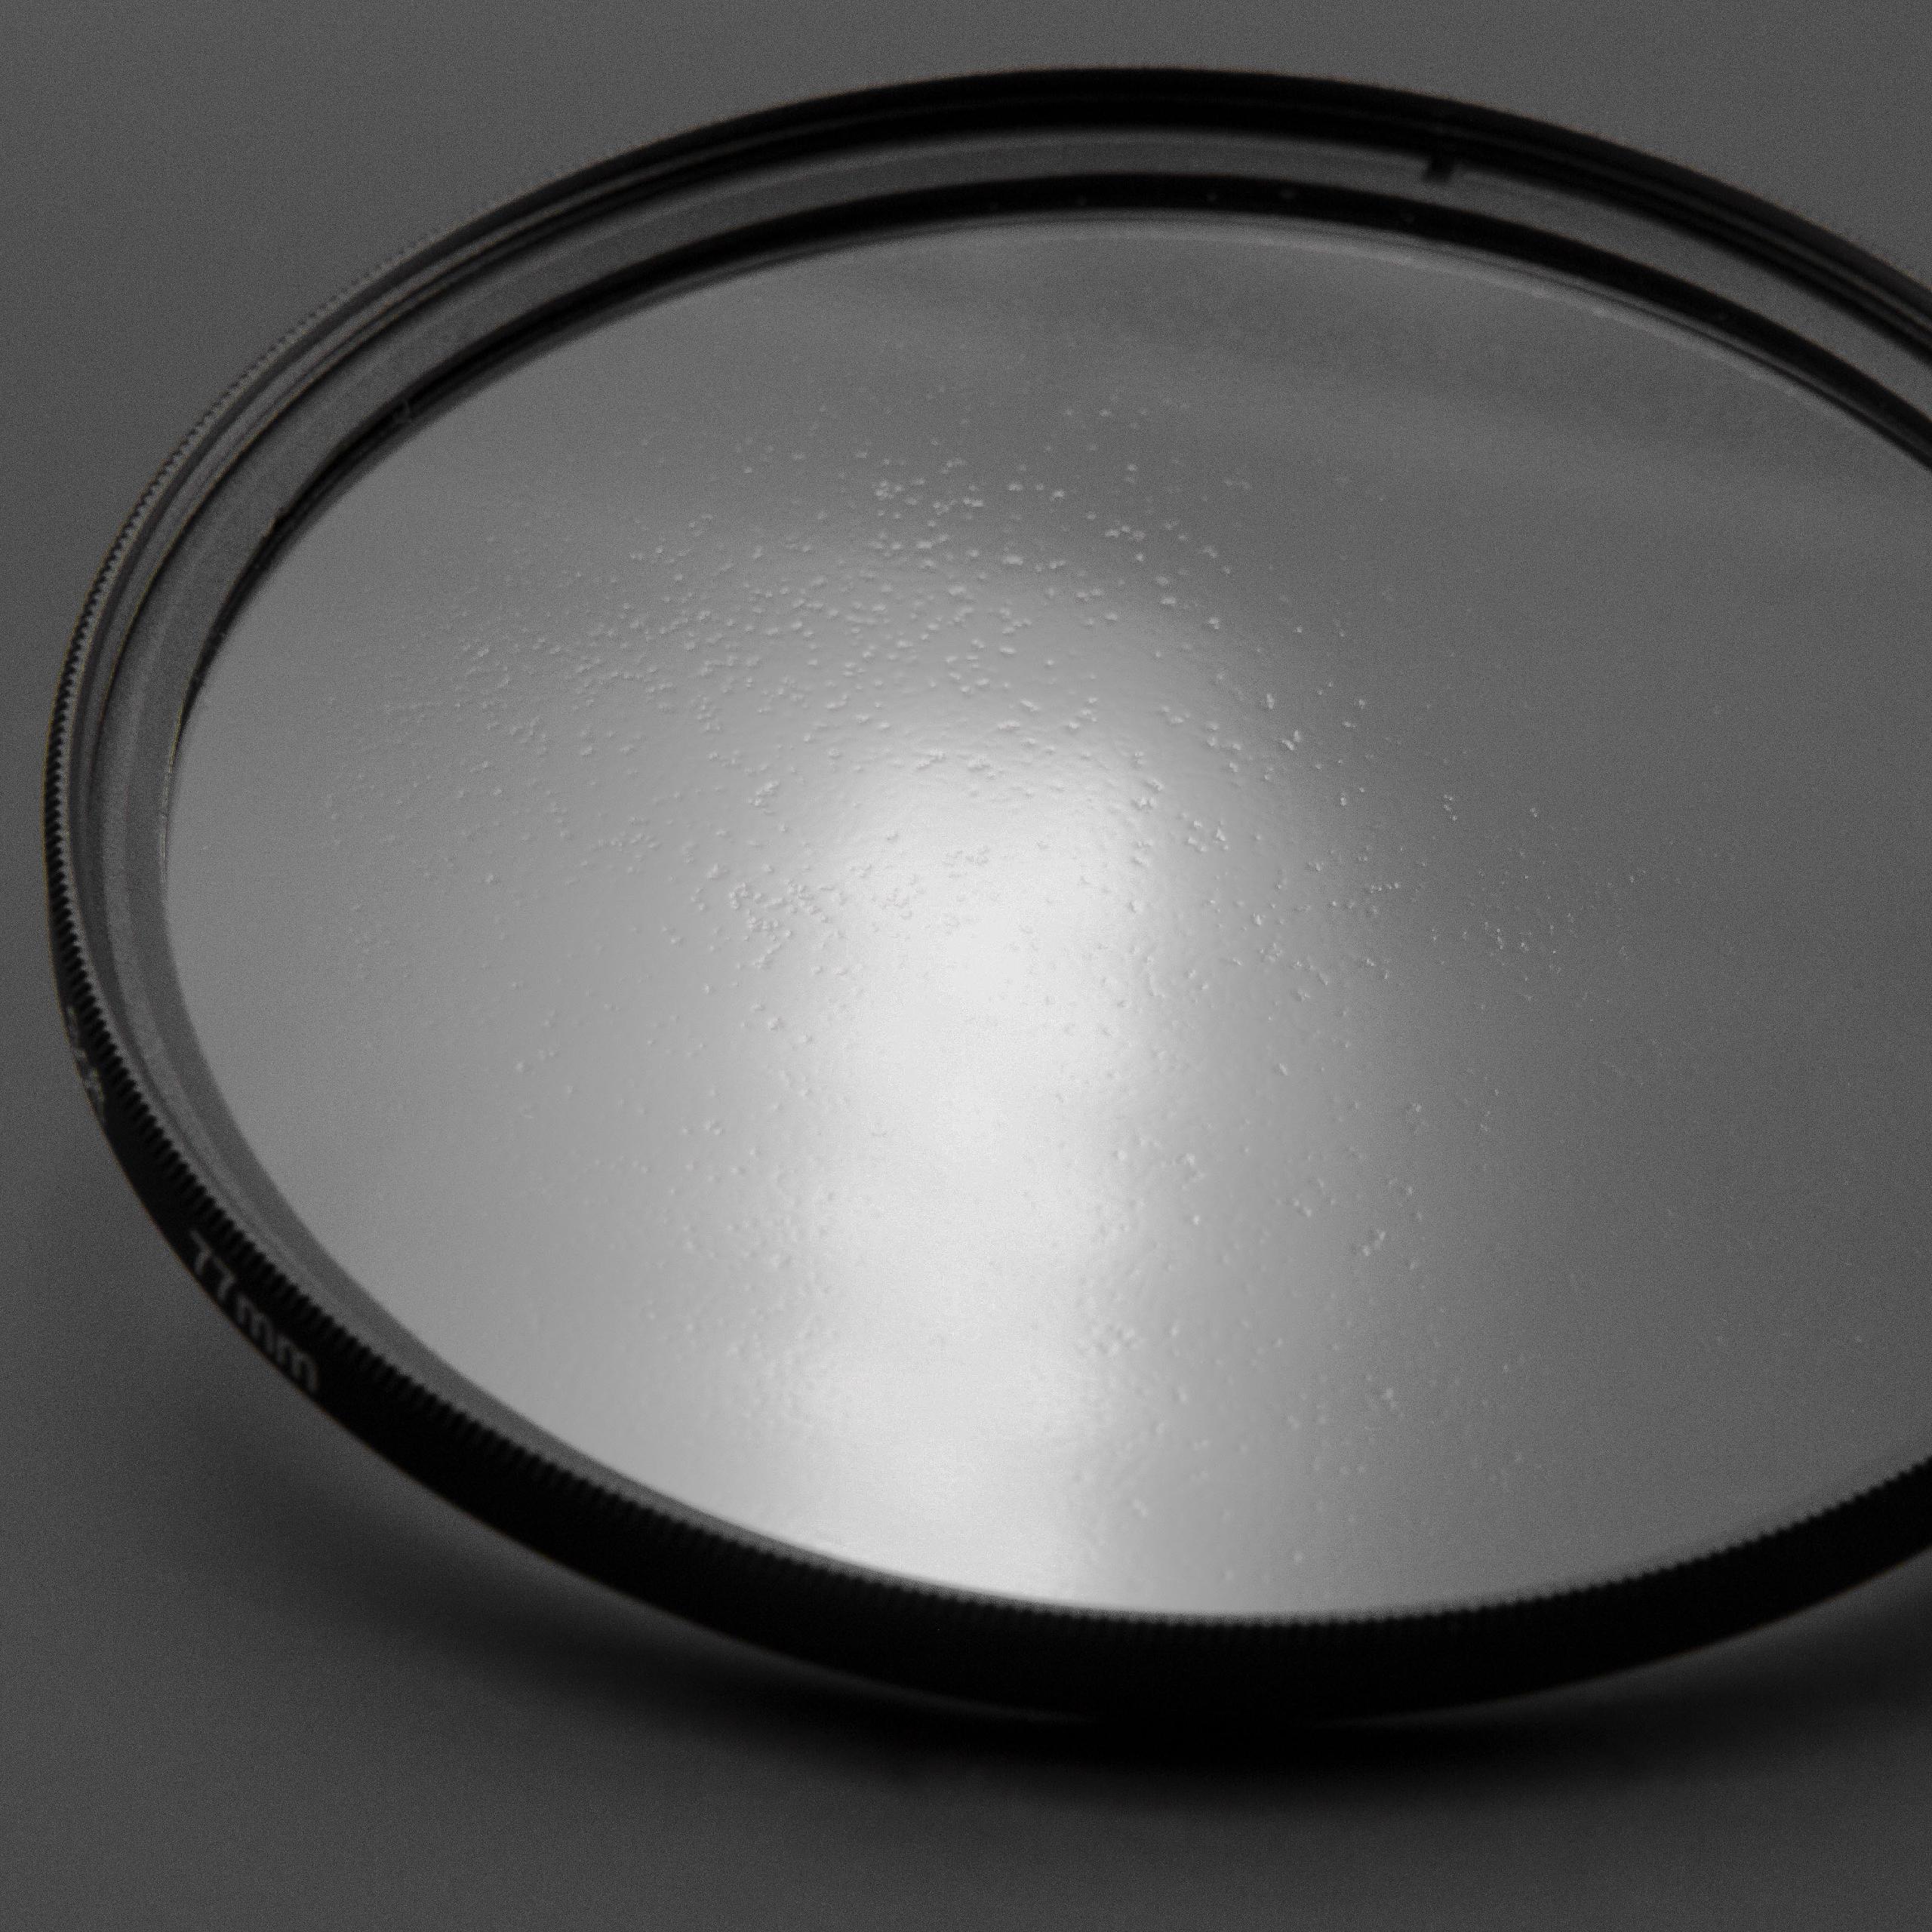 Filtr dyfuzyjny 49mm na obiektyw do różnych aparatów - filtr soft focus